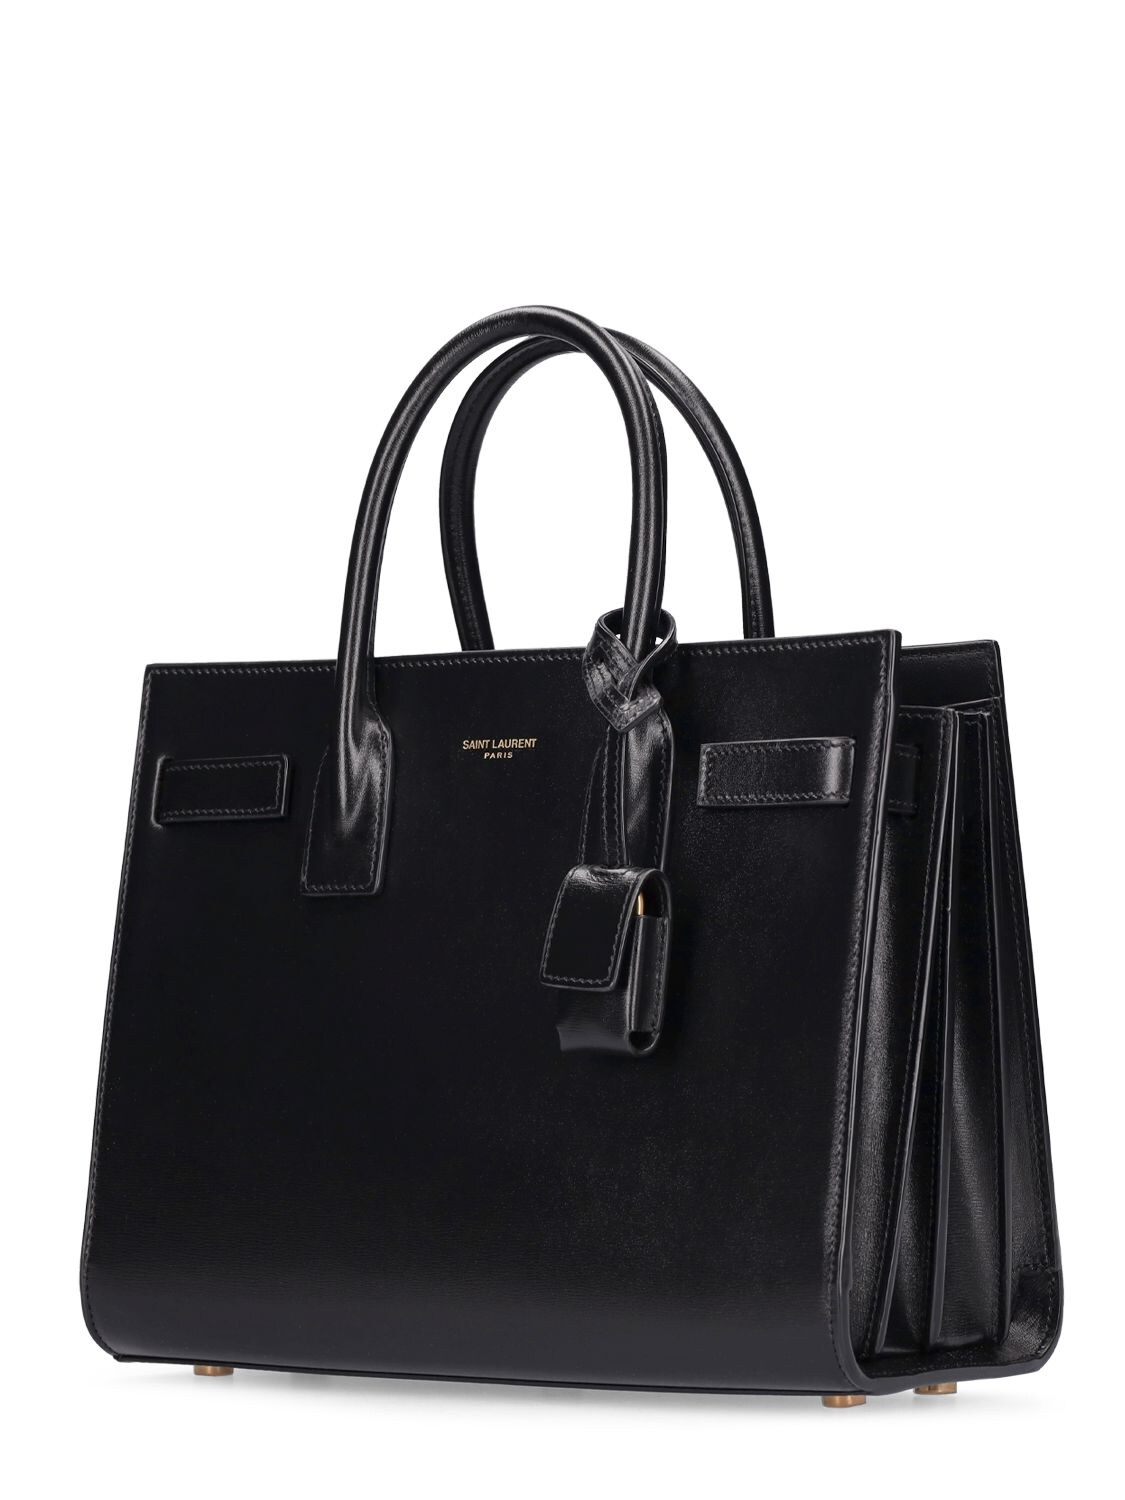 Black Sac de Jour Baby leather handbag, Saint Laurent